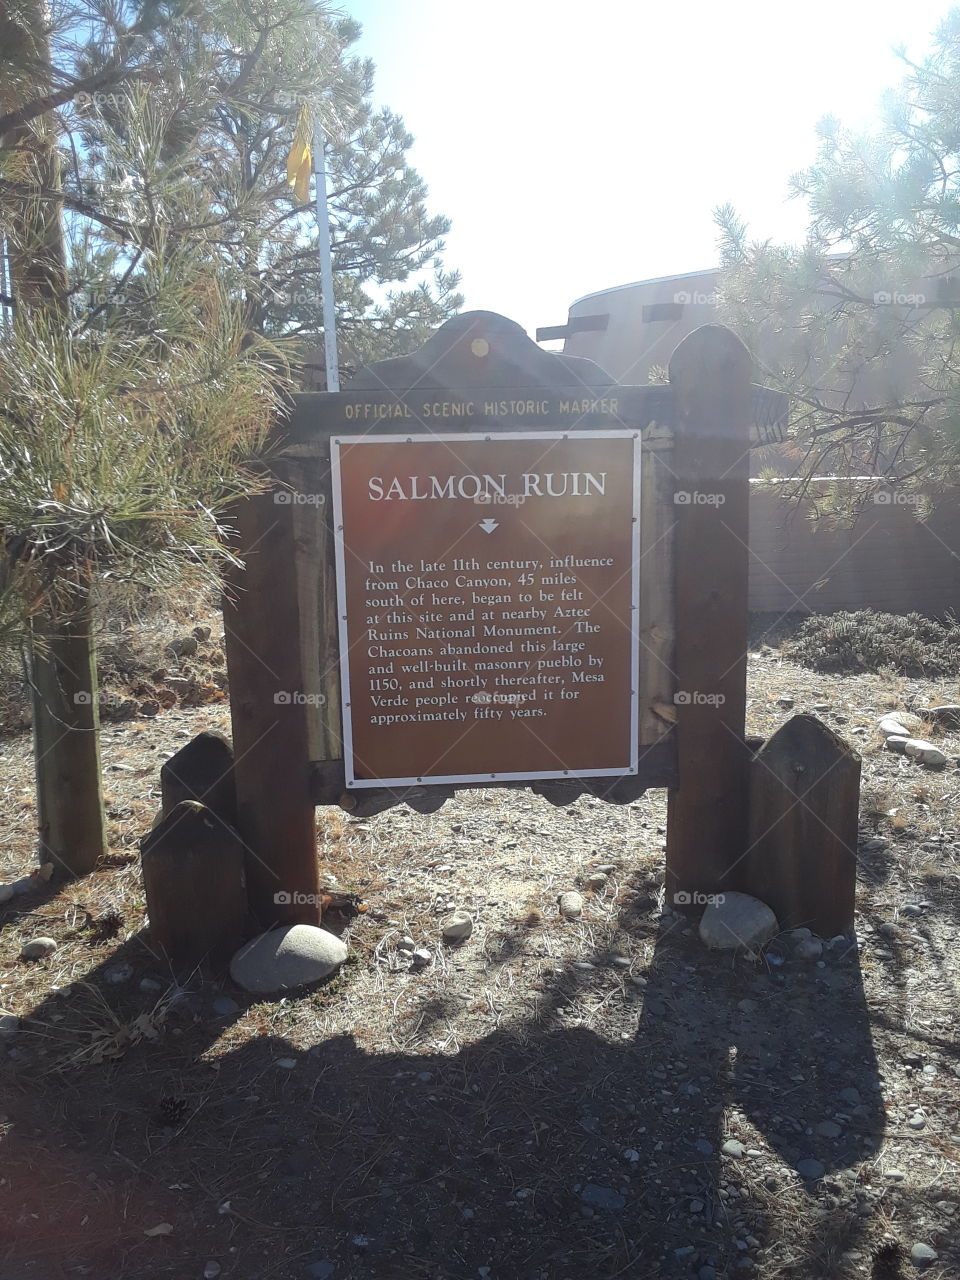 Salmon Ruin, New Mexico